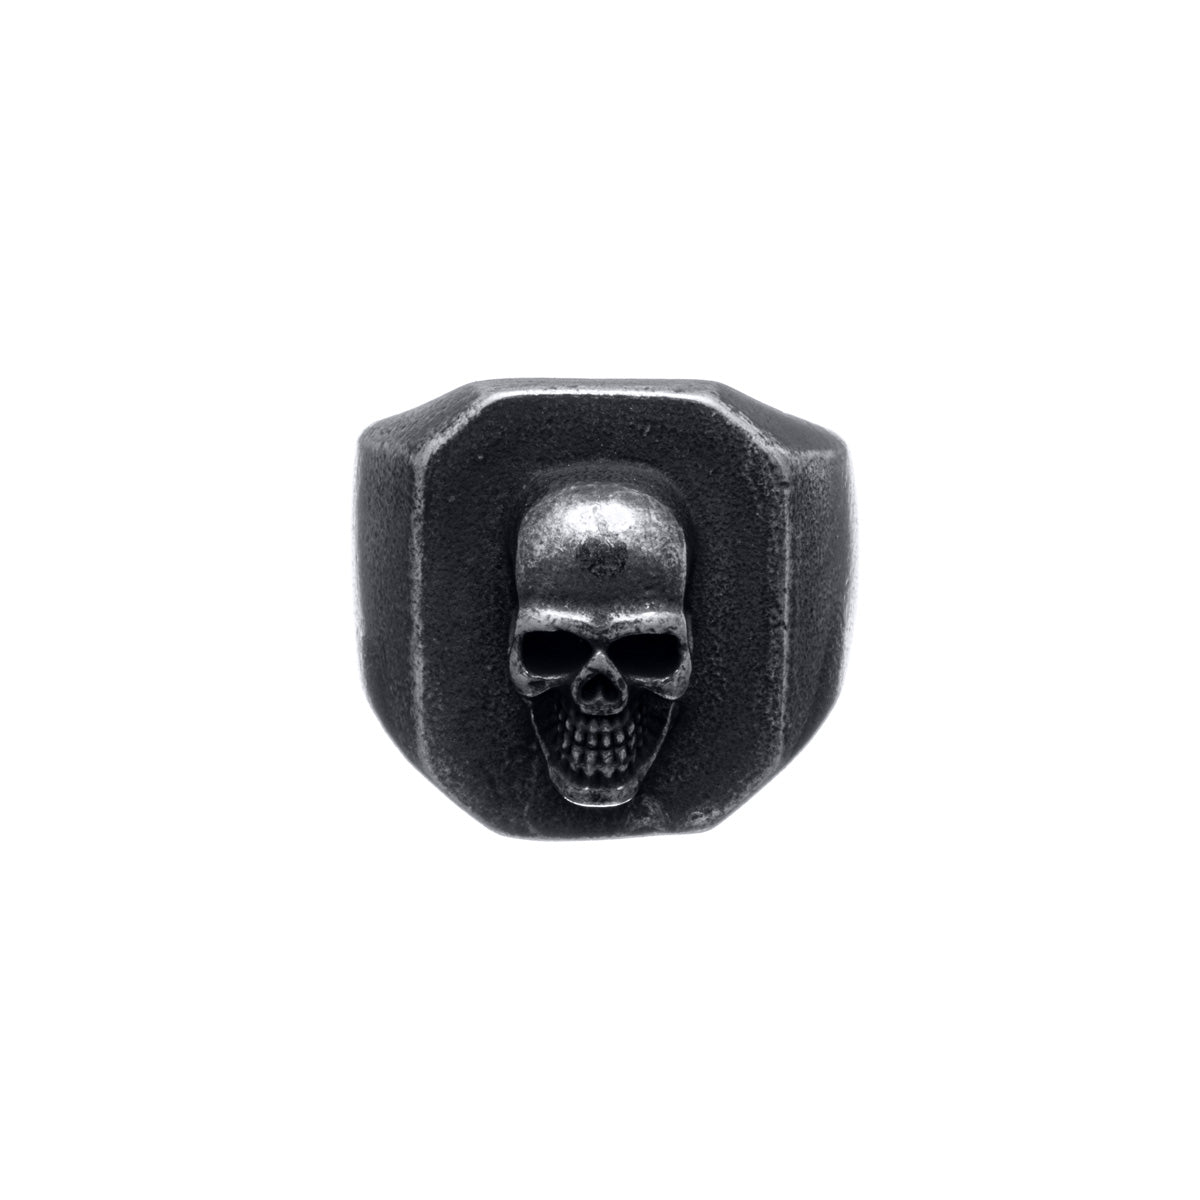 Dark skull wedding ring (Steel 316L)